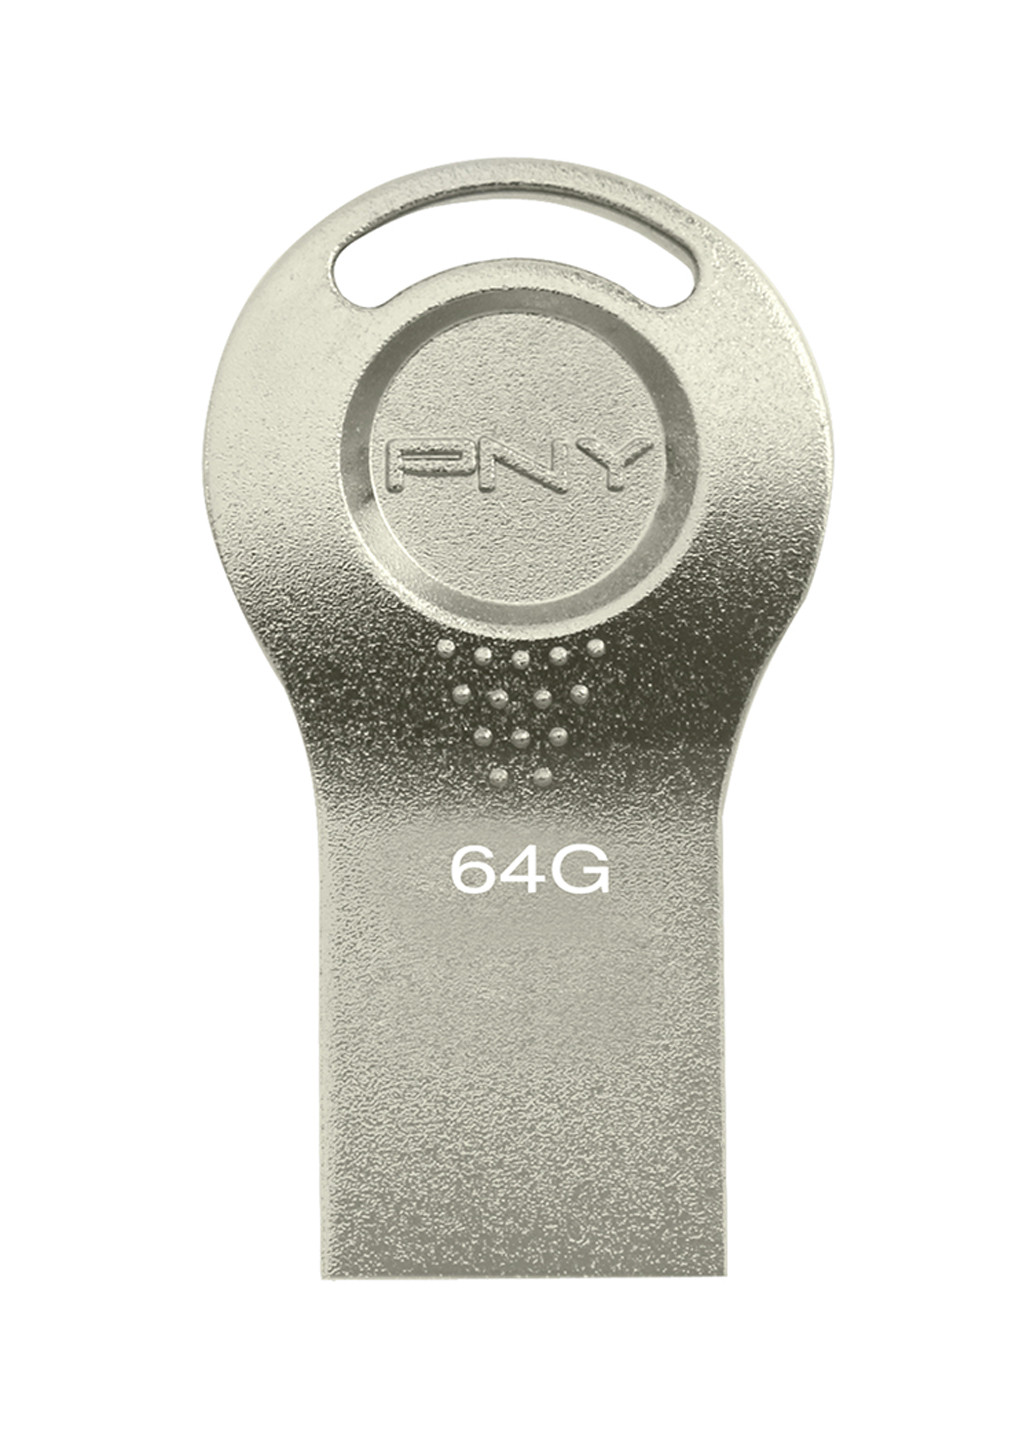 Флеш память USB Attache I 64GB Durable Metal Silver (FDI64GATTI-EF) PNY флеш память usb pny attache i 64gb durable metal silver (fdi64gatti-ef) (135526997)